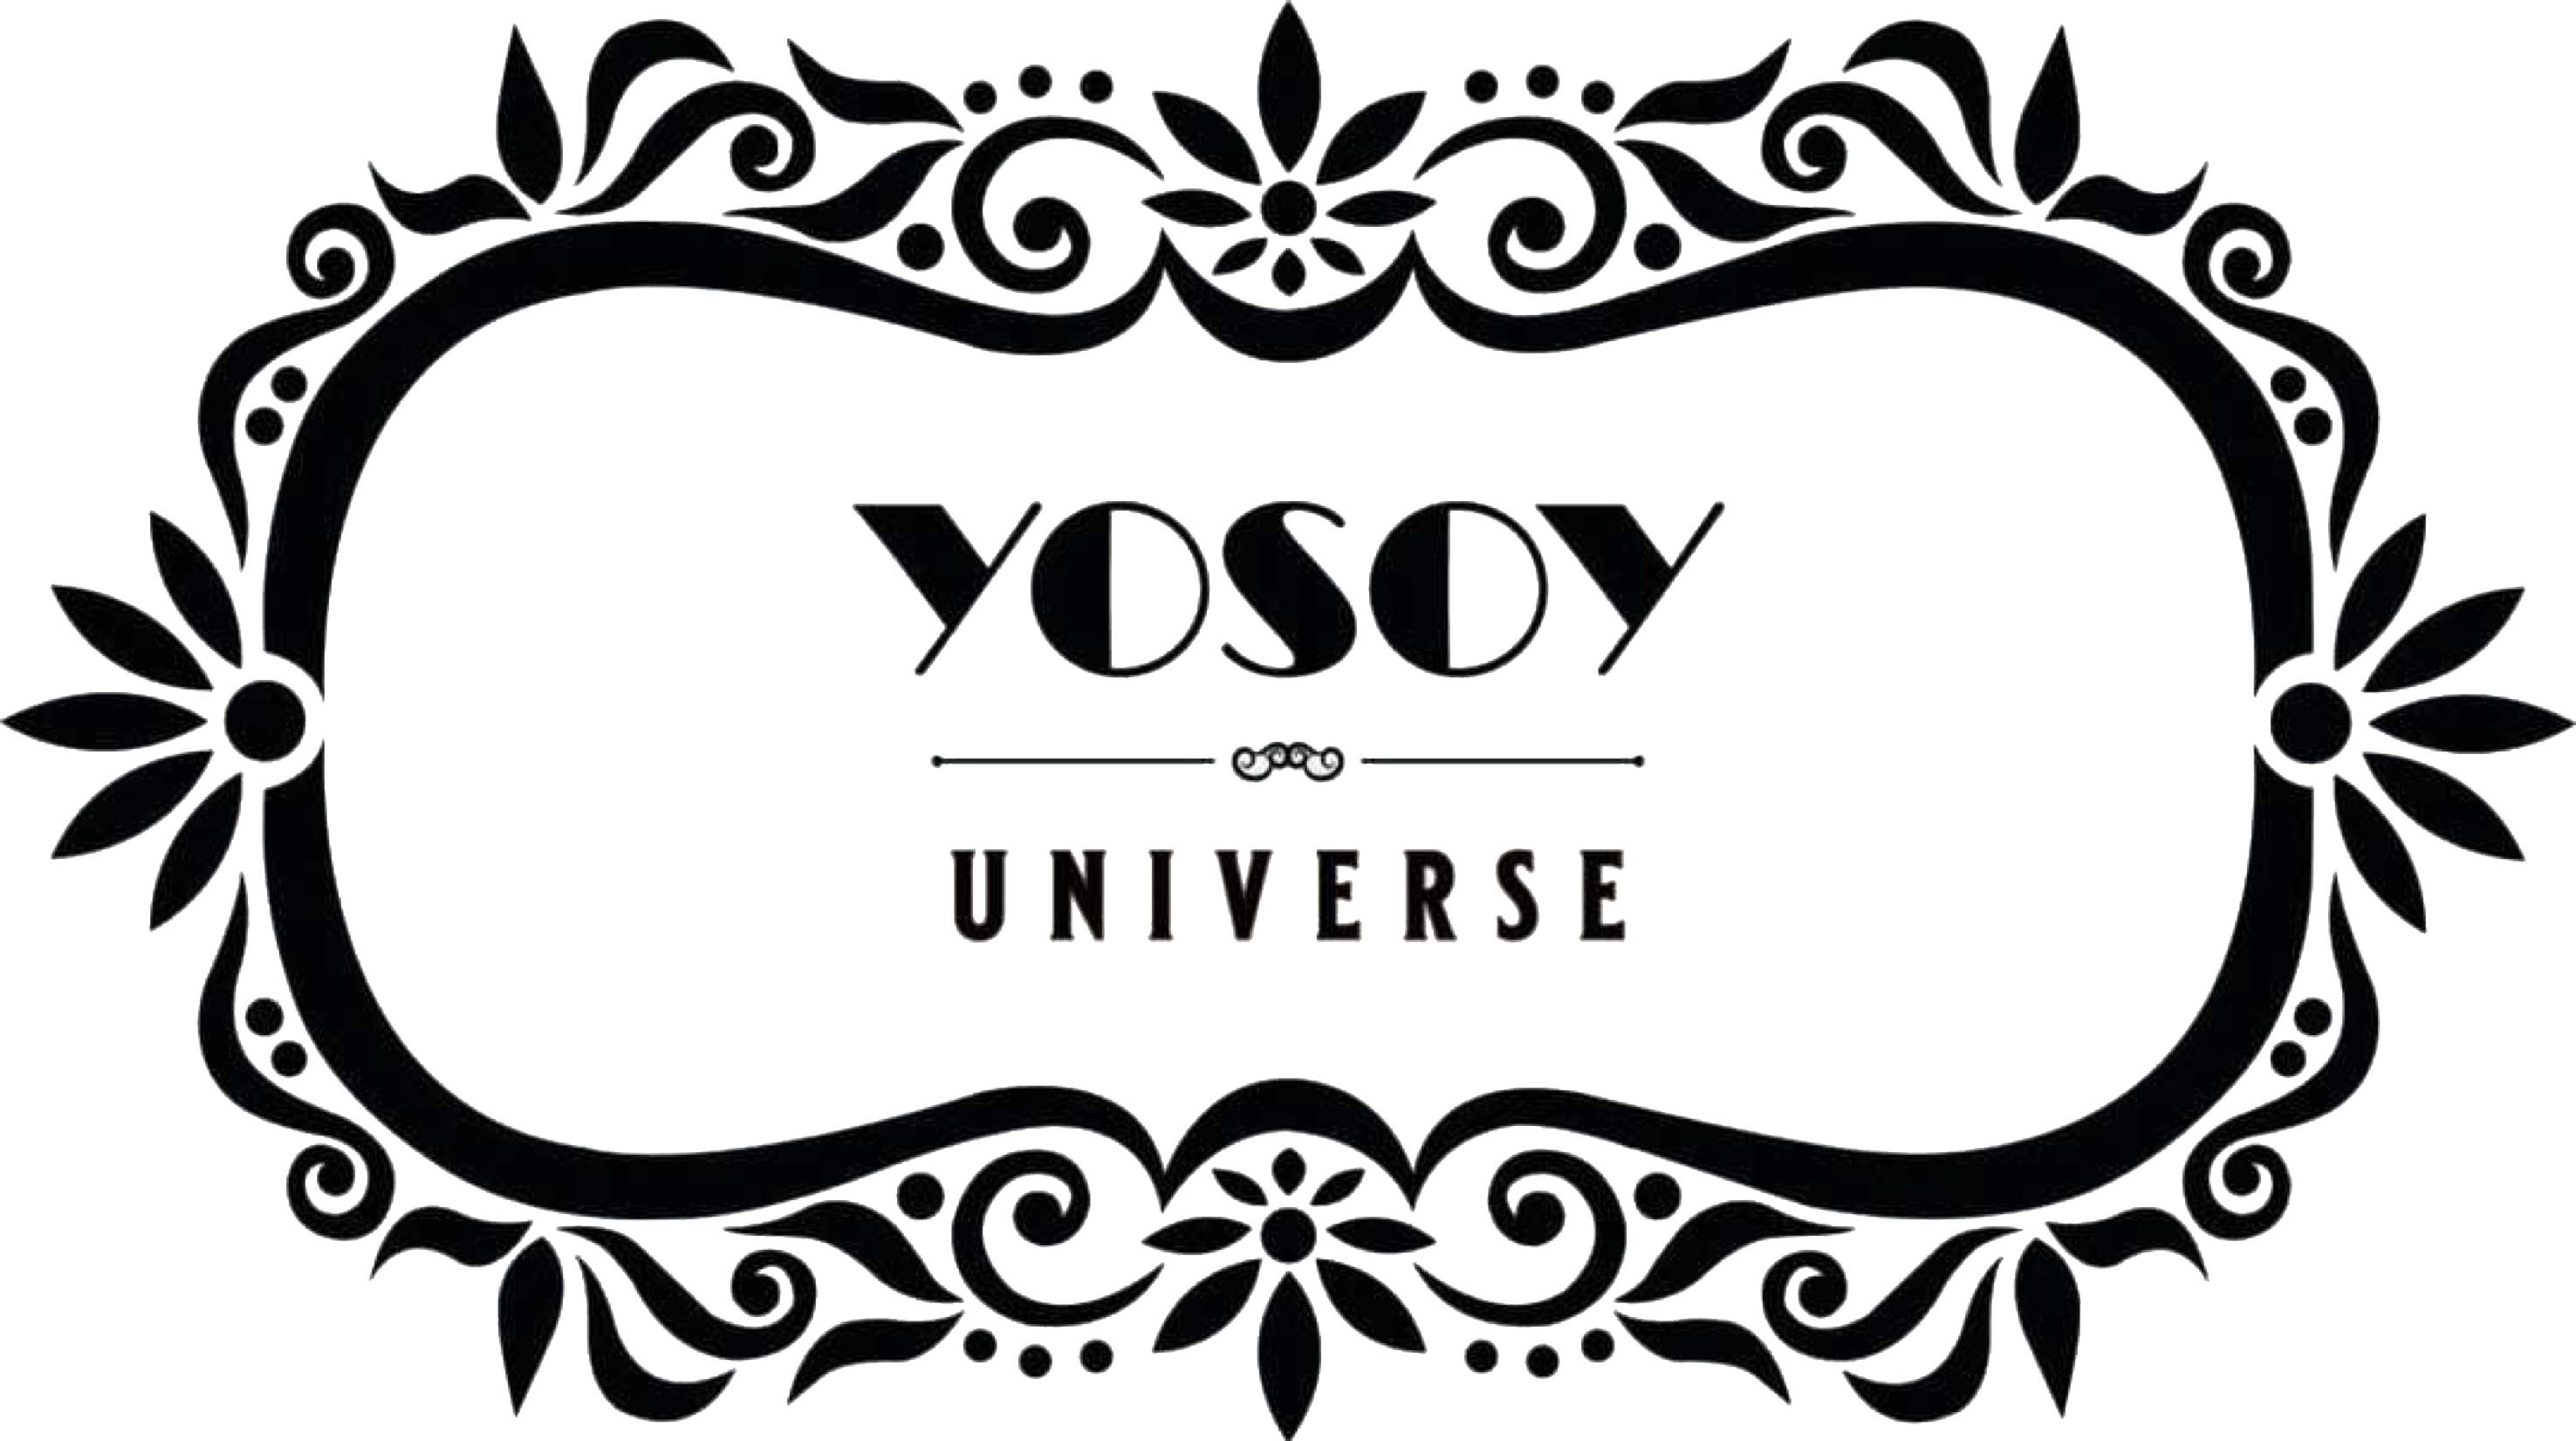 YOSOY Universe